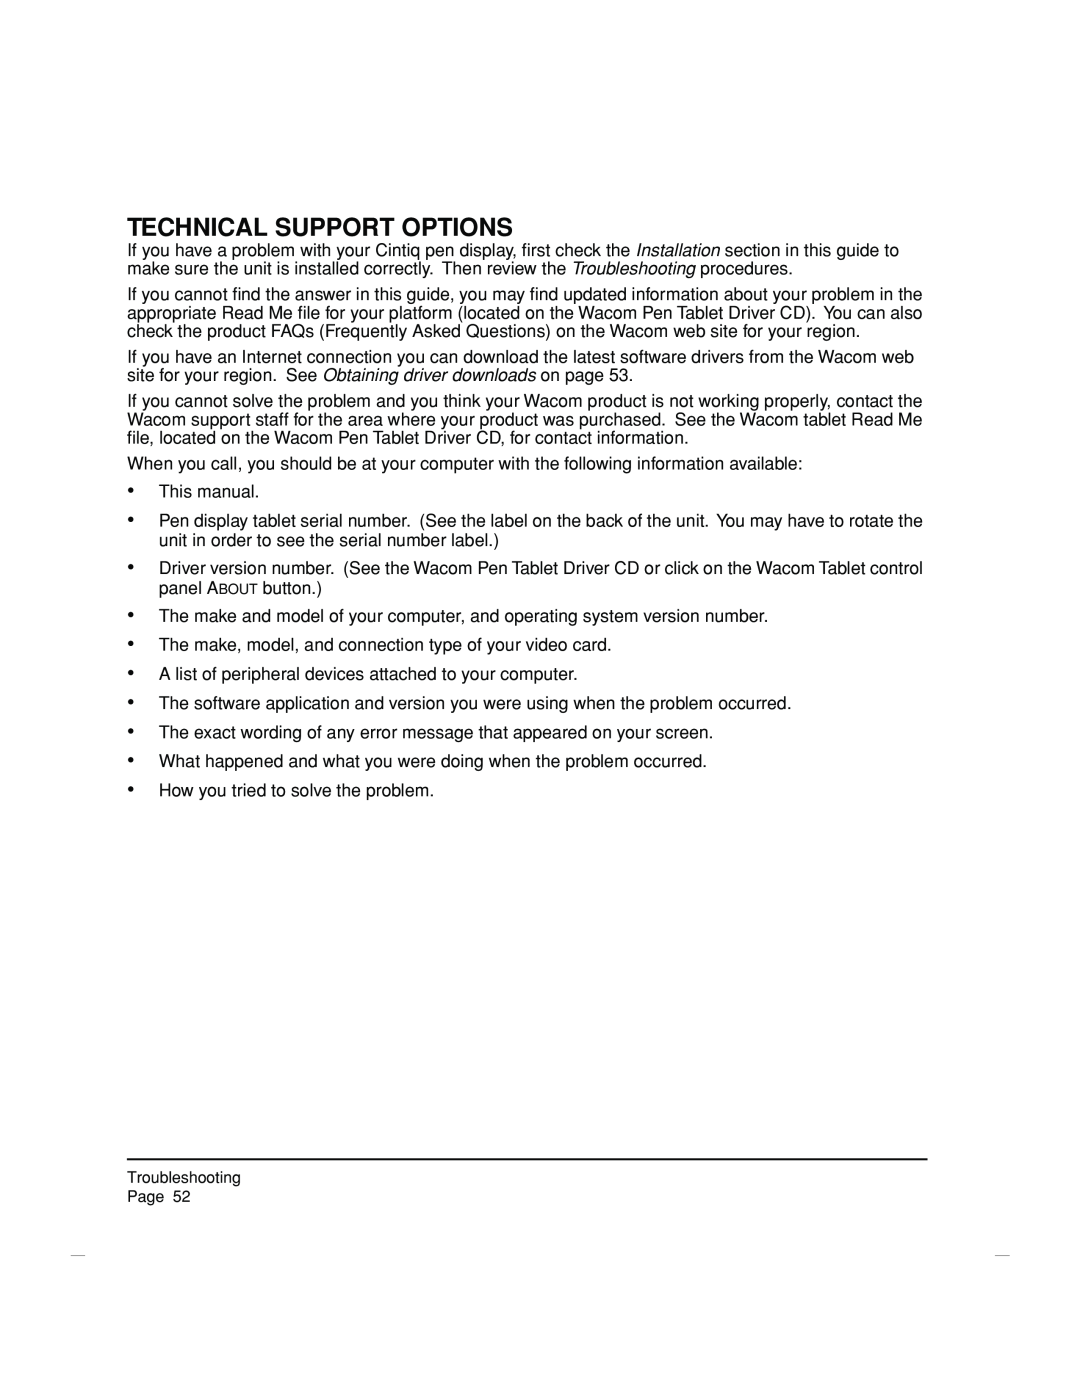 Wacom DTZ-2100D manual Technical Support Options 